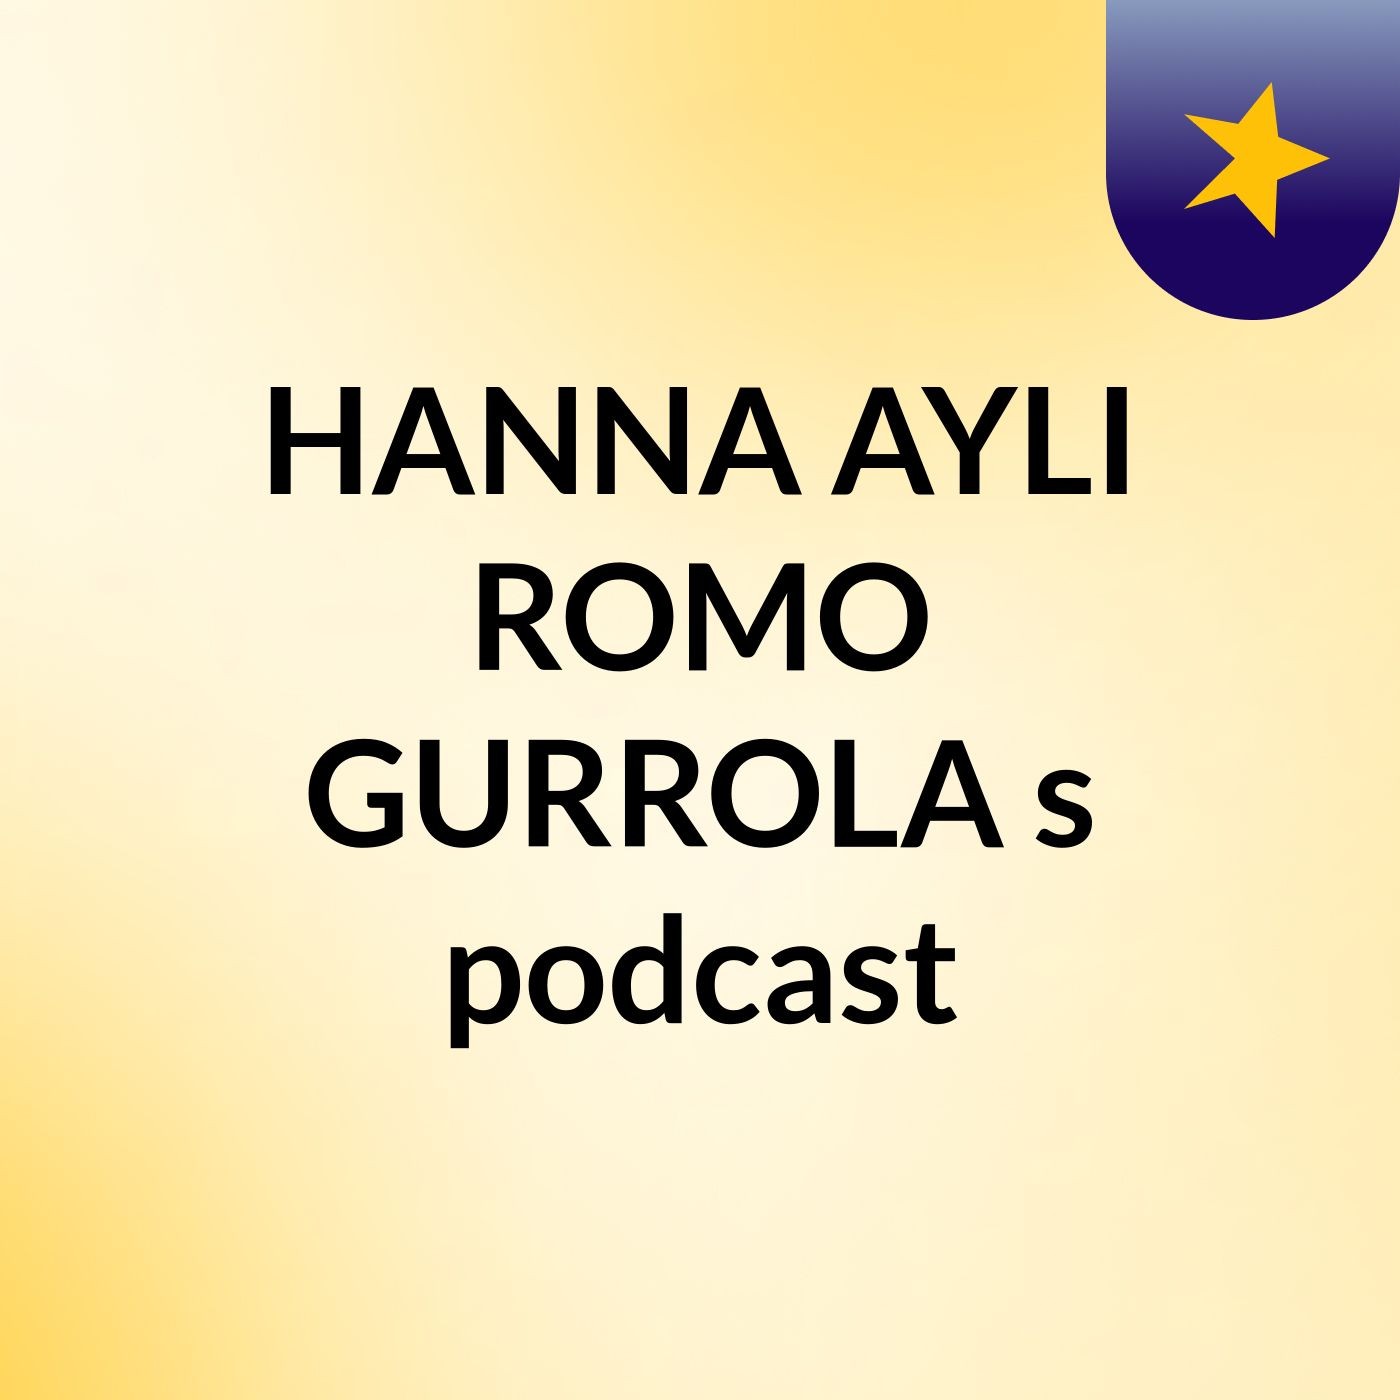 HANNA AYLI ROMO GURROLA's podcast